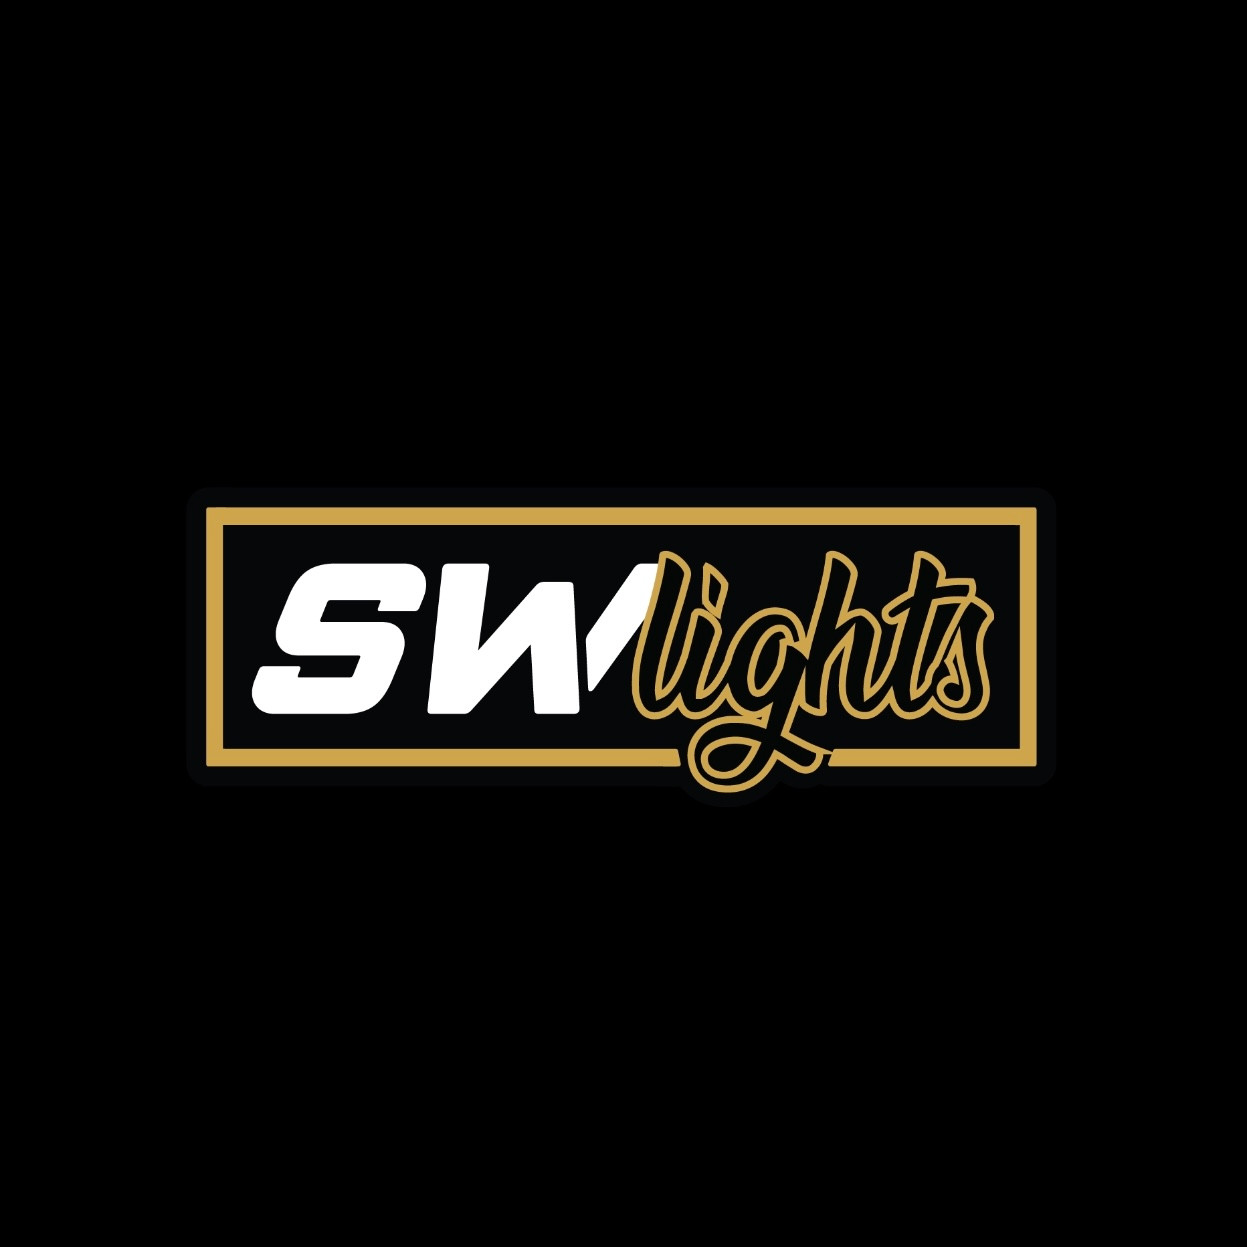 www.sw-lights.com